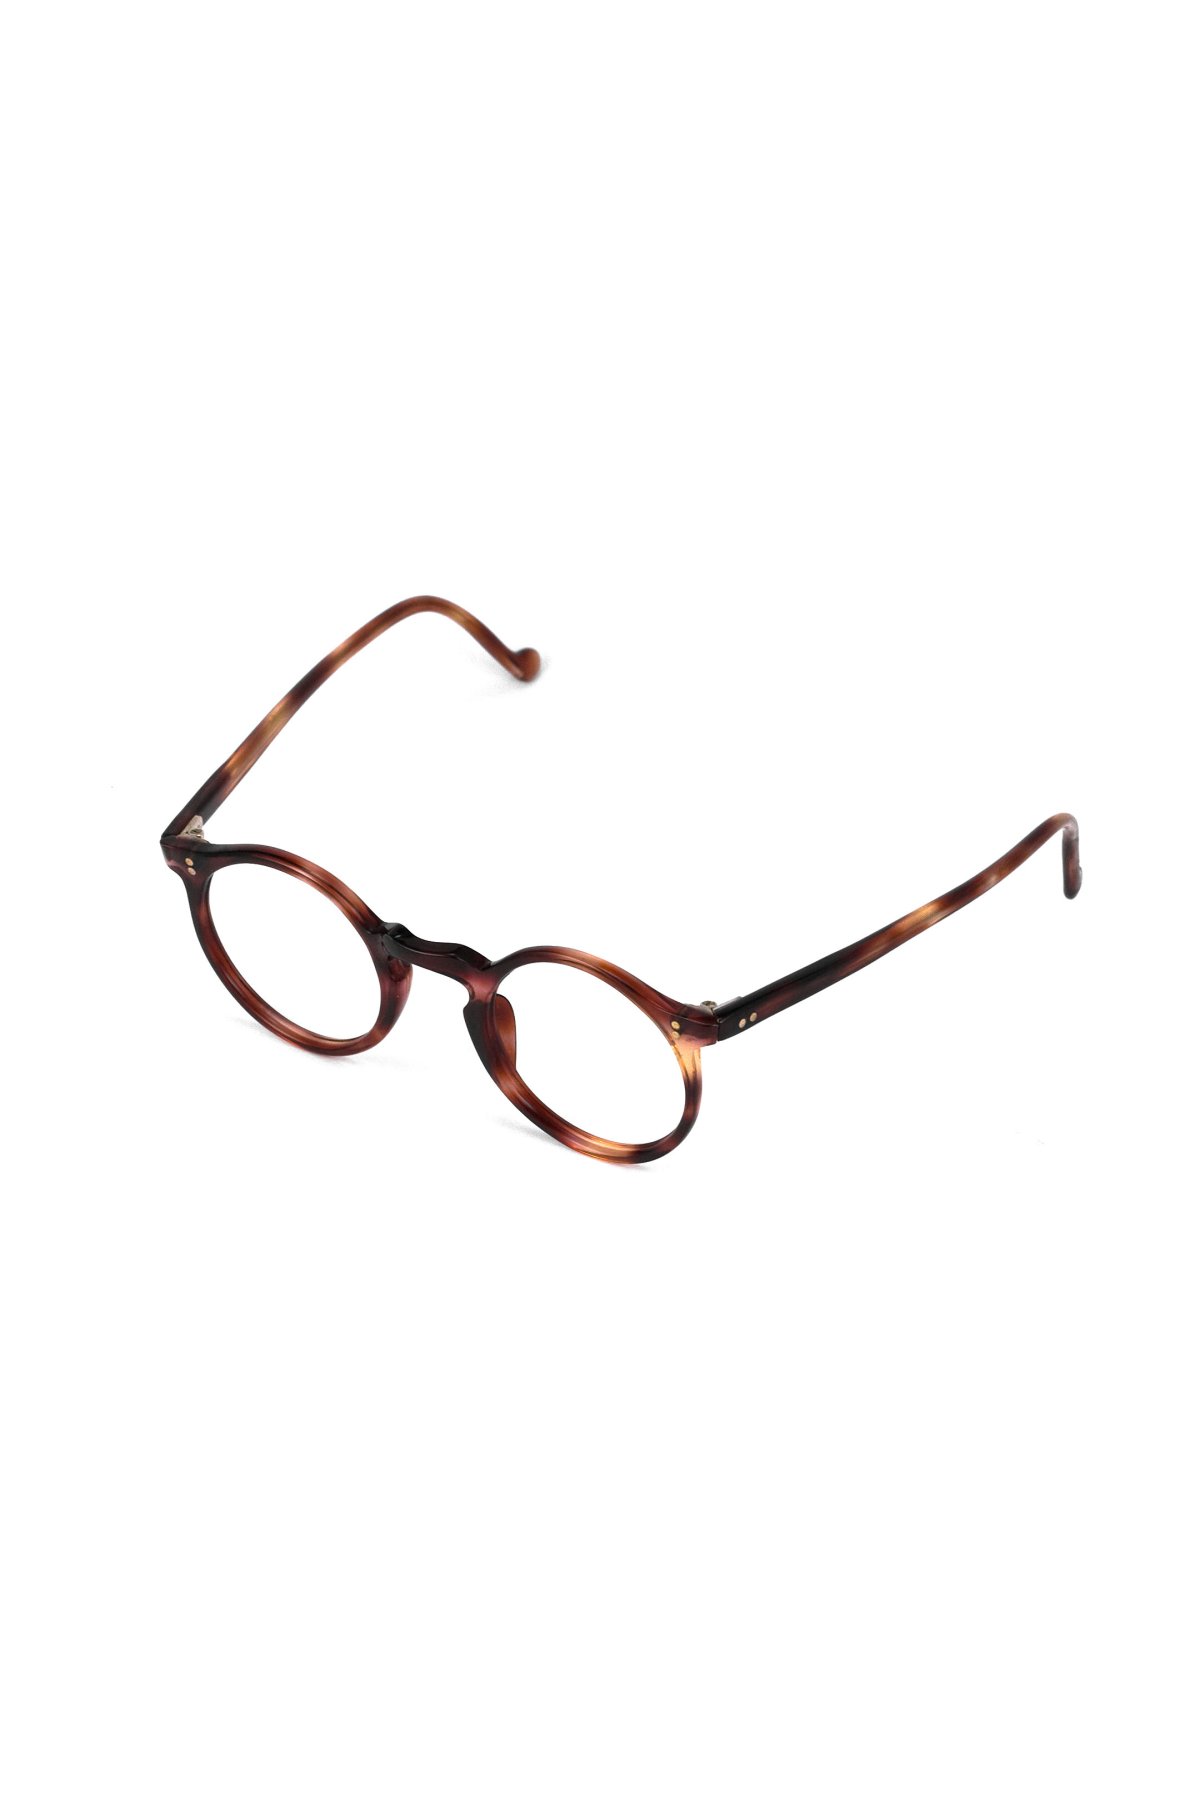 ビンテージ メガネ 眼鏡 フランス 1950s - FRANCE VINTAGE EYEGLASS ROUND AMBER - OPT-857 -  PHAETON